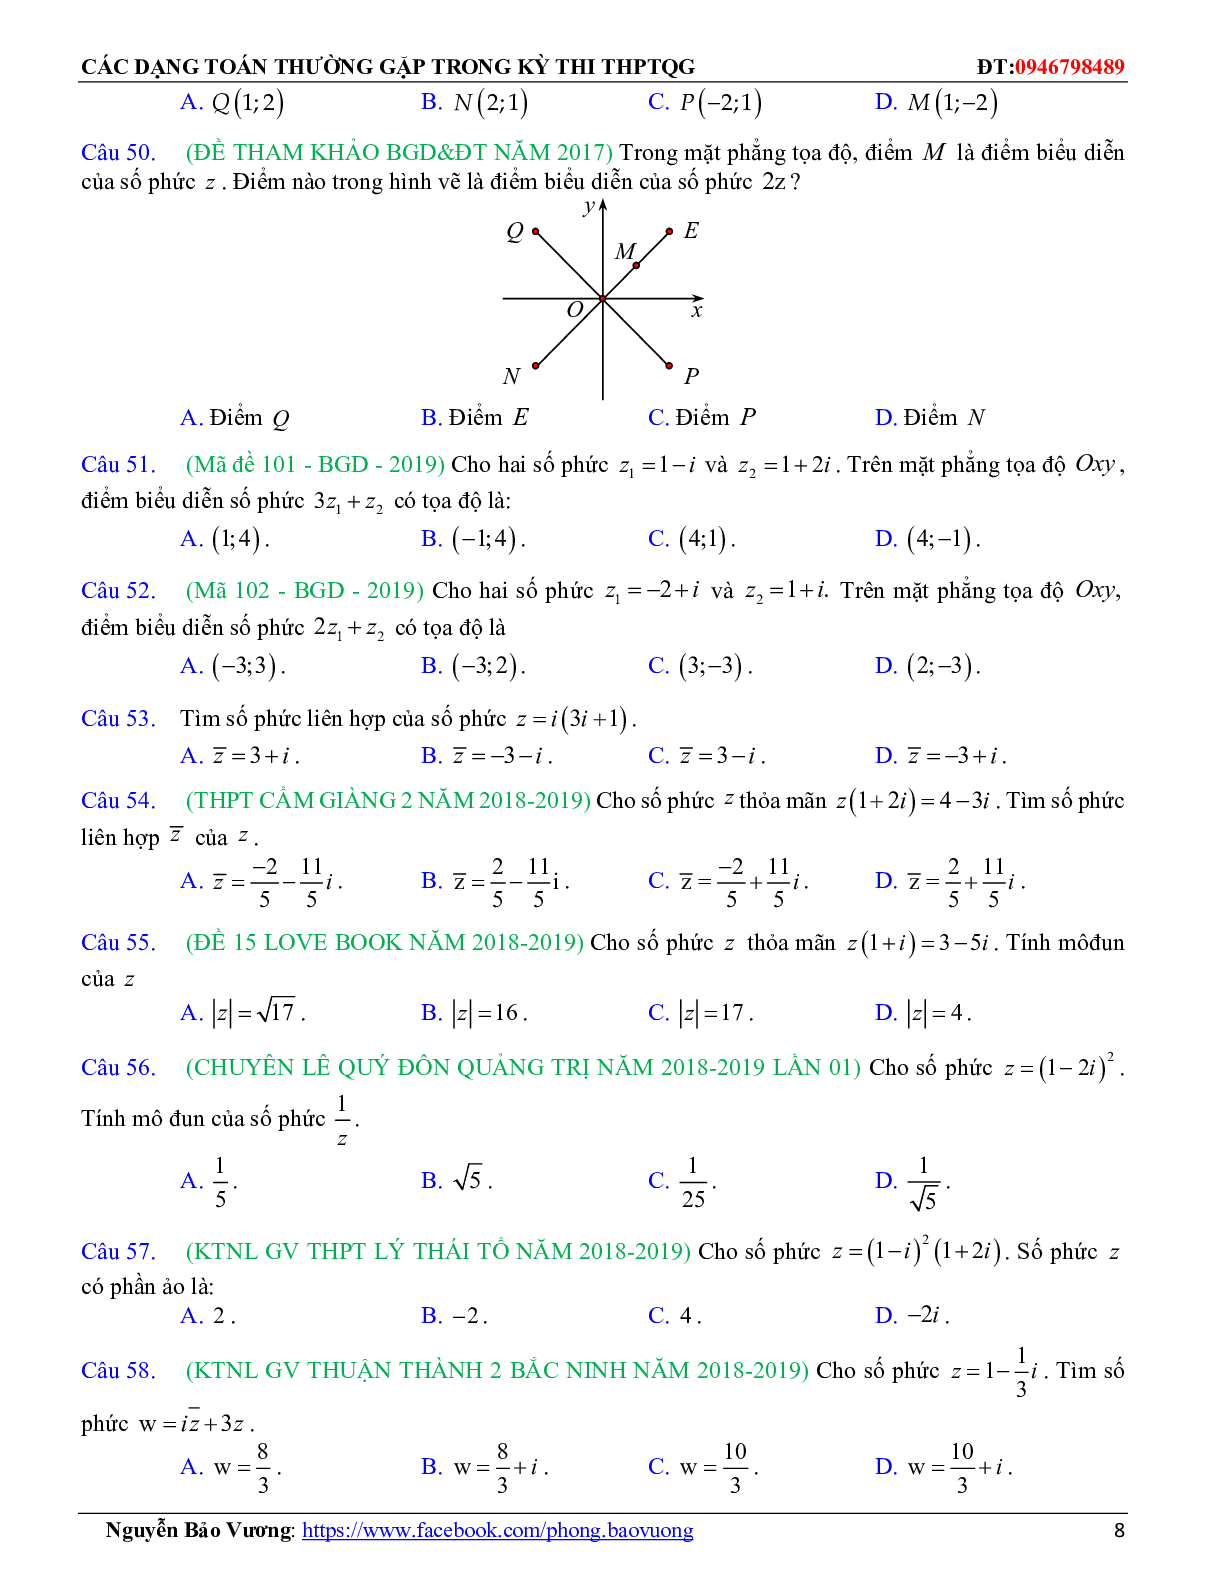 Các dạng toán về số phức thường gặp trong kỳ thi THPTQG (trang 8)